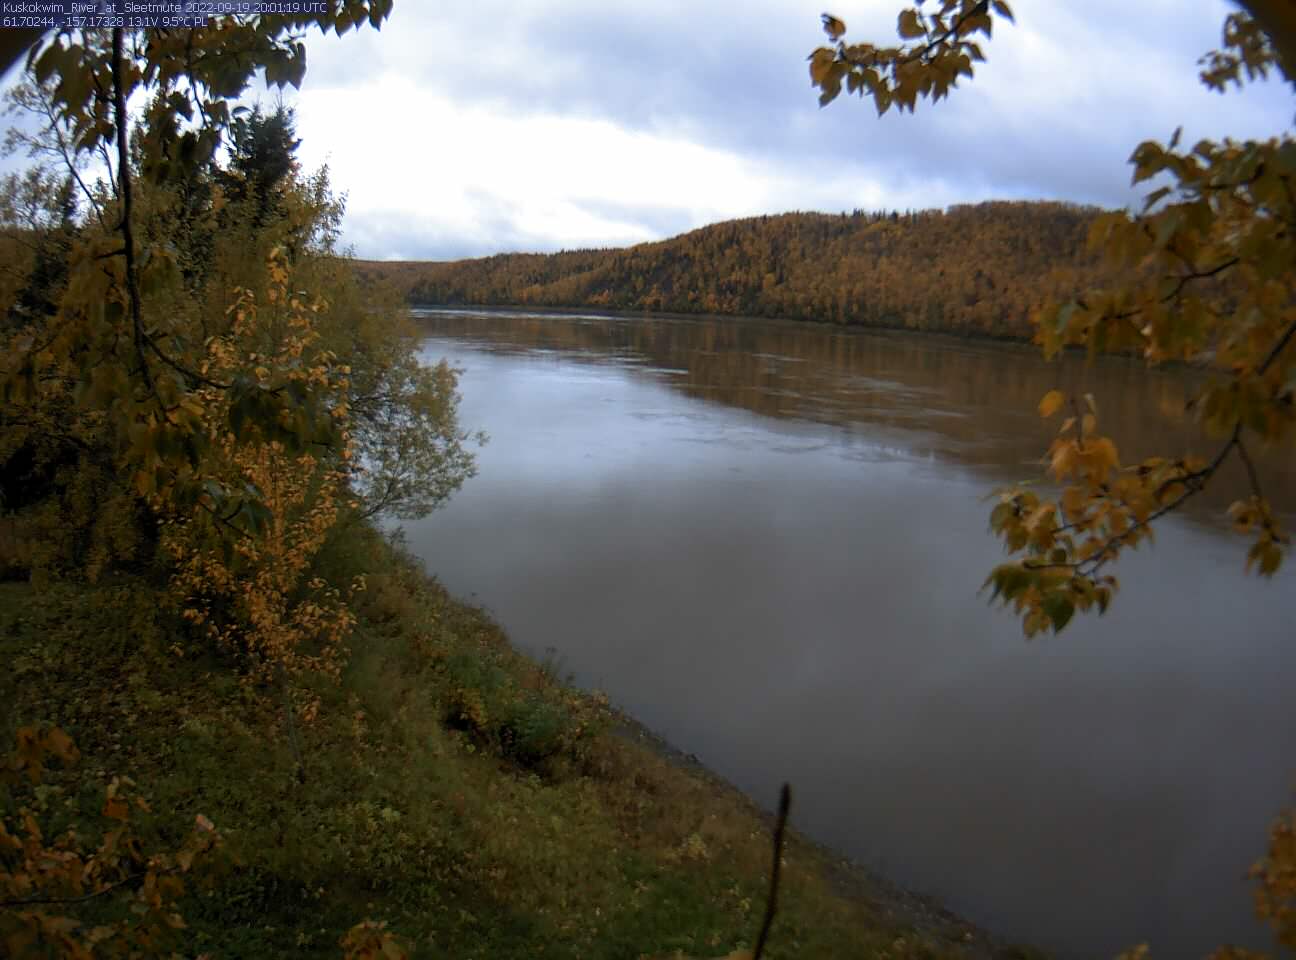 Kuskokwim_River_at_Sleetmute_20220919200120.jpg